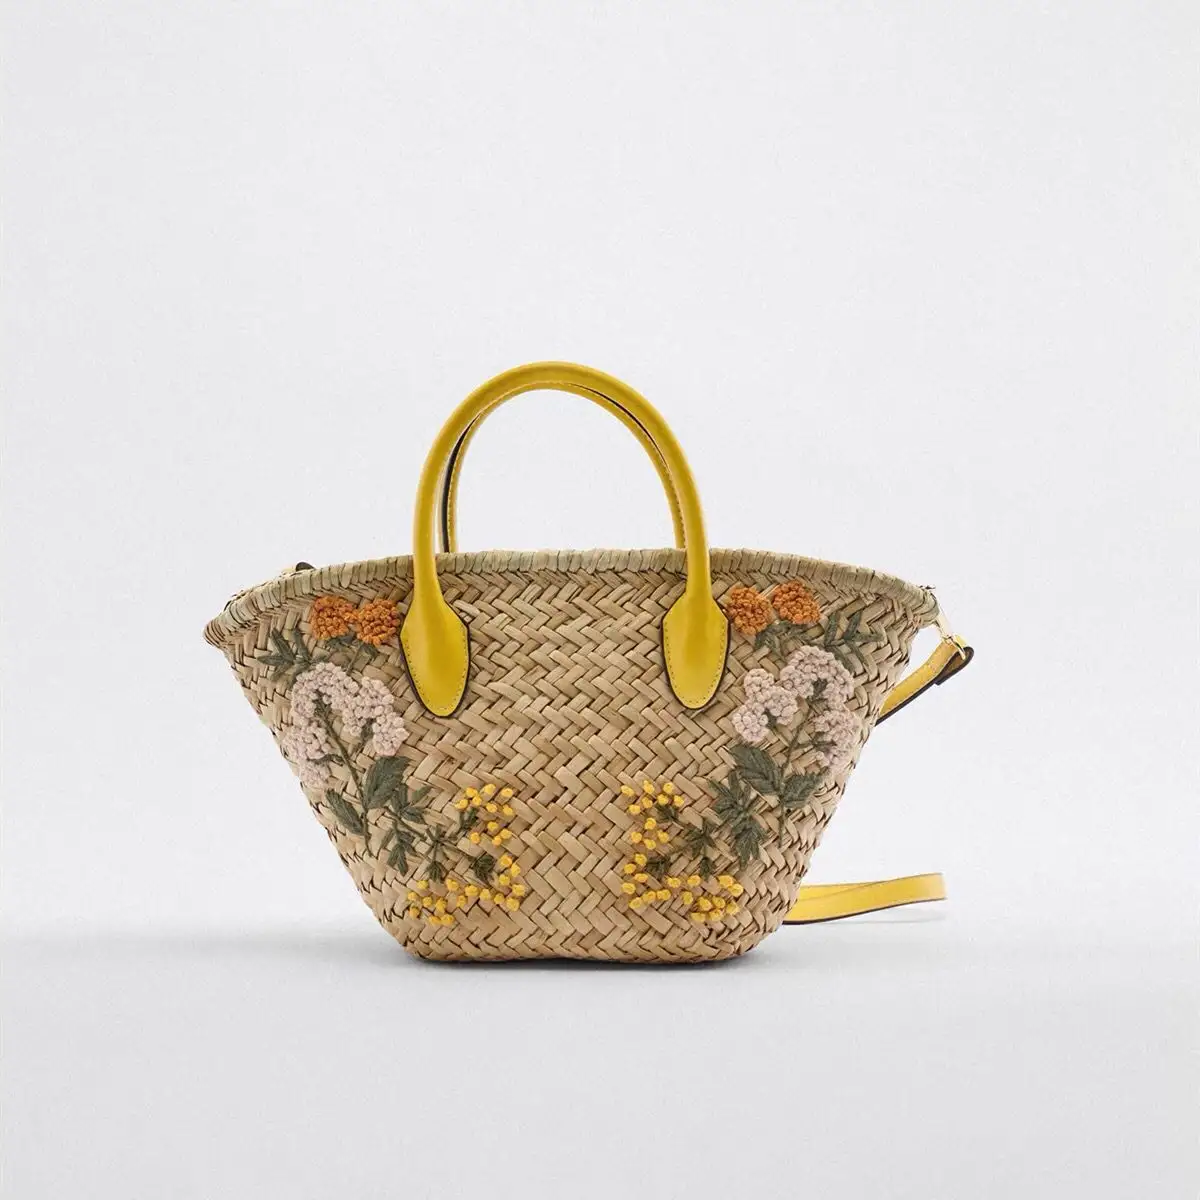 Bolsa de palha com tecido de grama do mar, sacola de ombro com flores personalizada